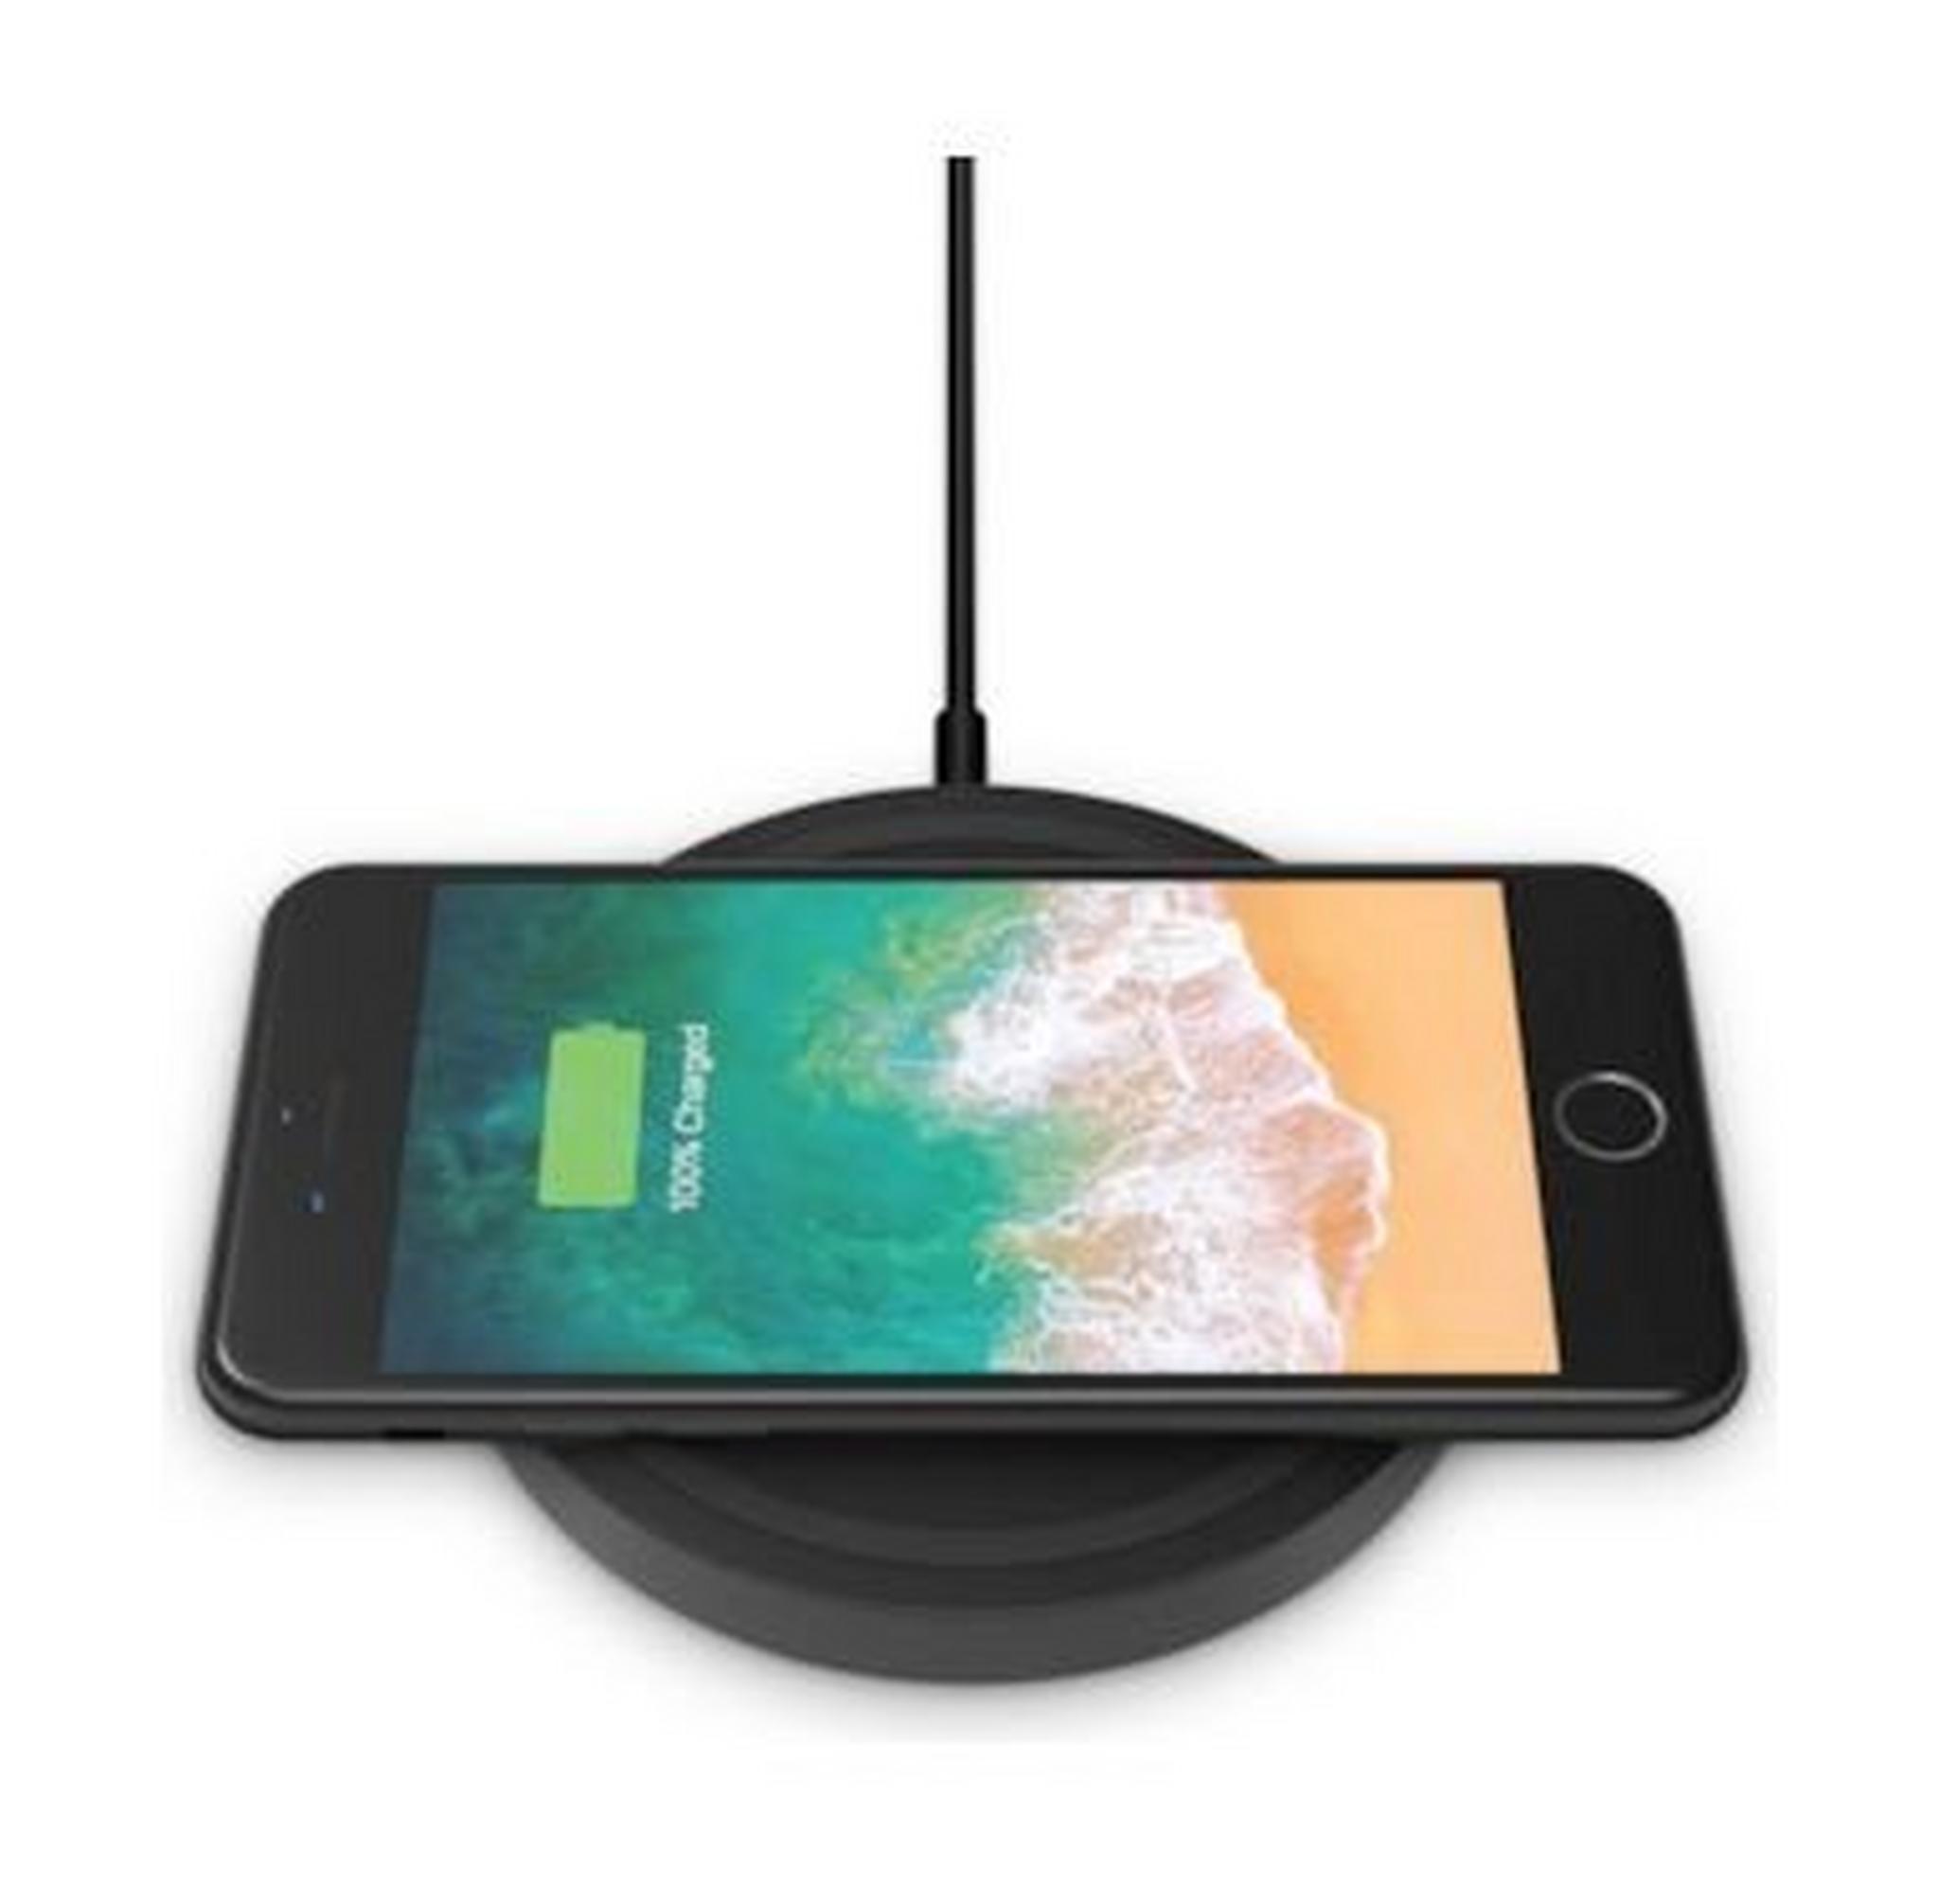 Belkin Boost Up Wireless Charging Pad 5W - Black